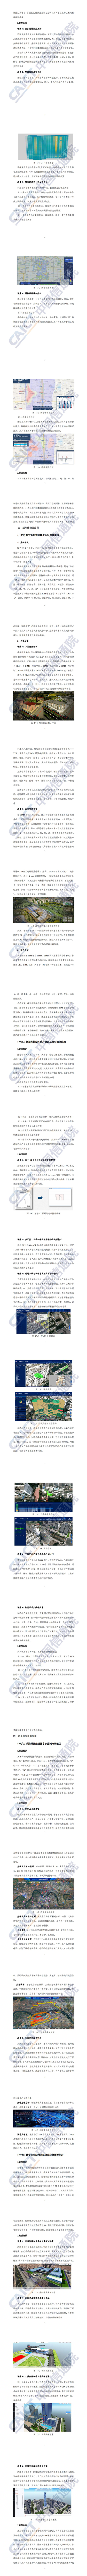 【中国信通院】数字孪生城市典型场景与应用案例（2020年）_3.jpg